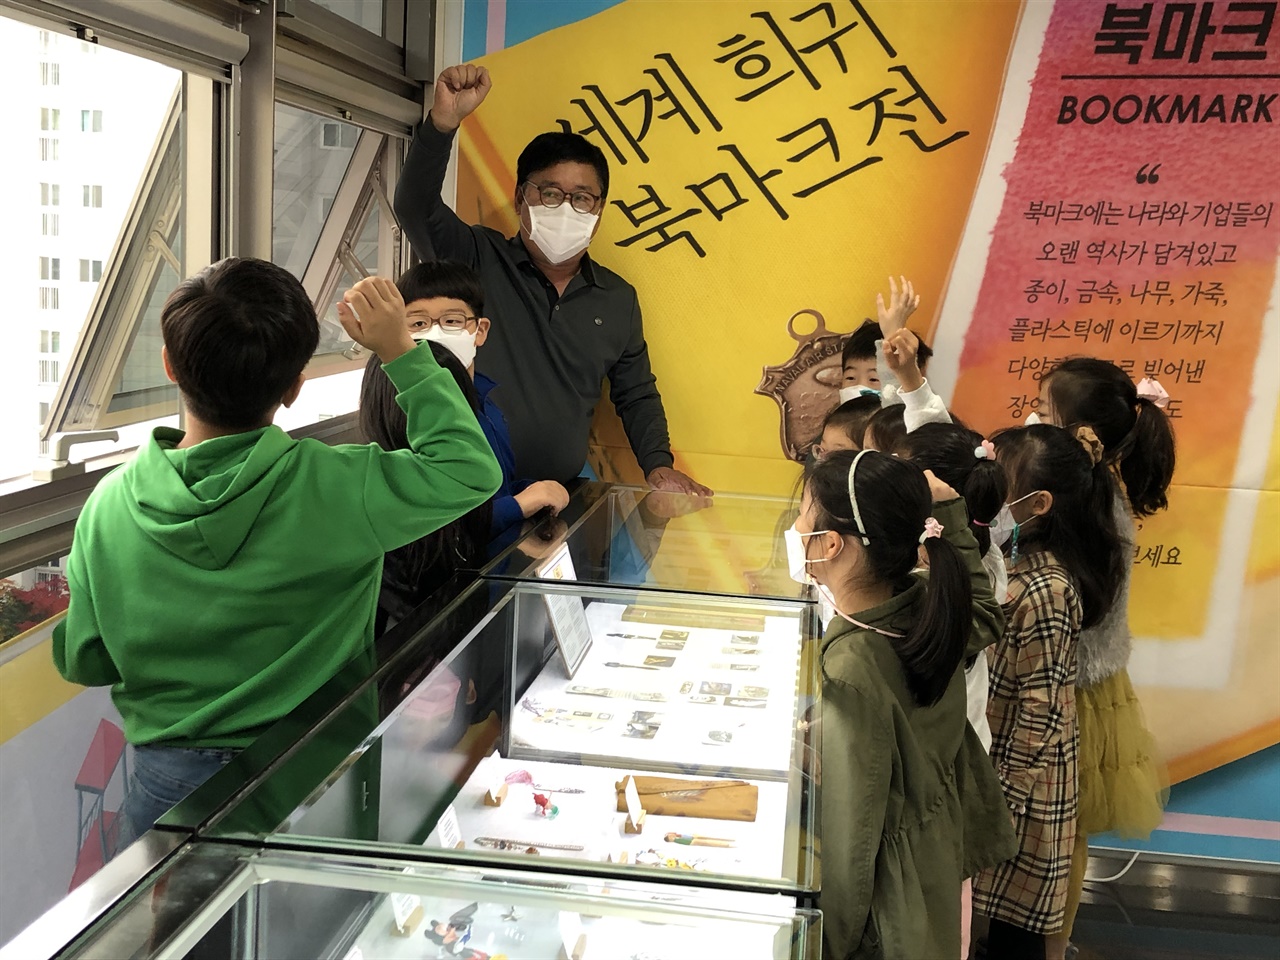 ‘세계 희귀 북마크전’ 나만의책갈피 만들기 수업 권오준 선생 물음에 손을 드는 아이들